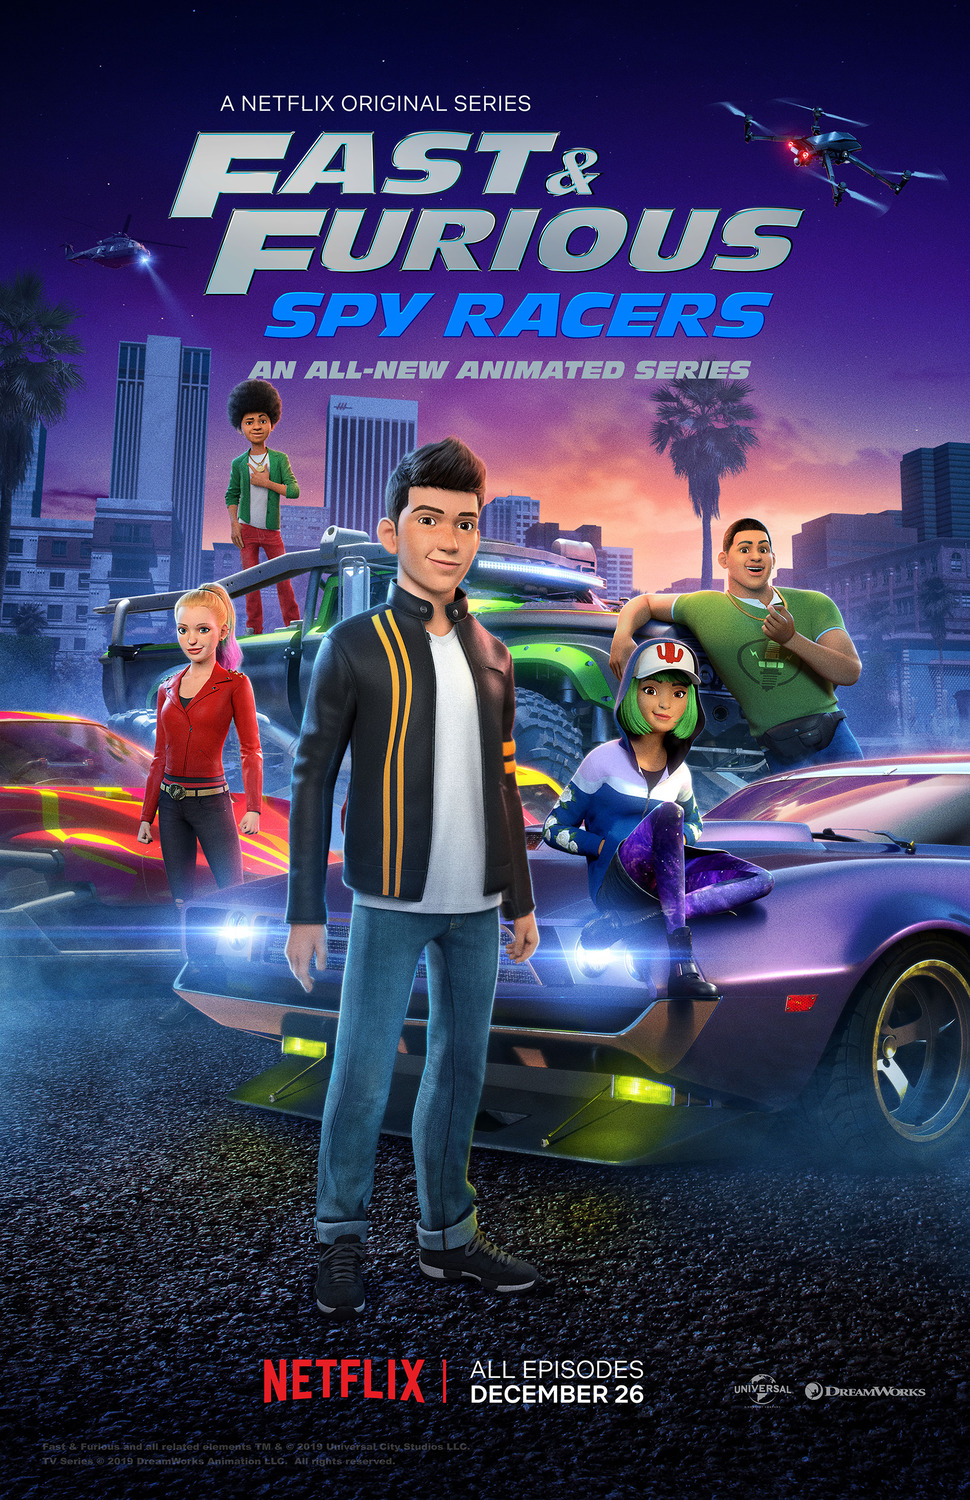 ดูหนังออนไลน์ฟรี Fast & Furious Spy Racers Season 6 EP7 เร็วแรงทะลุนรก ซิ่งสยบโลก ซีซั่น 6 ตอนที่ 7